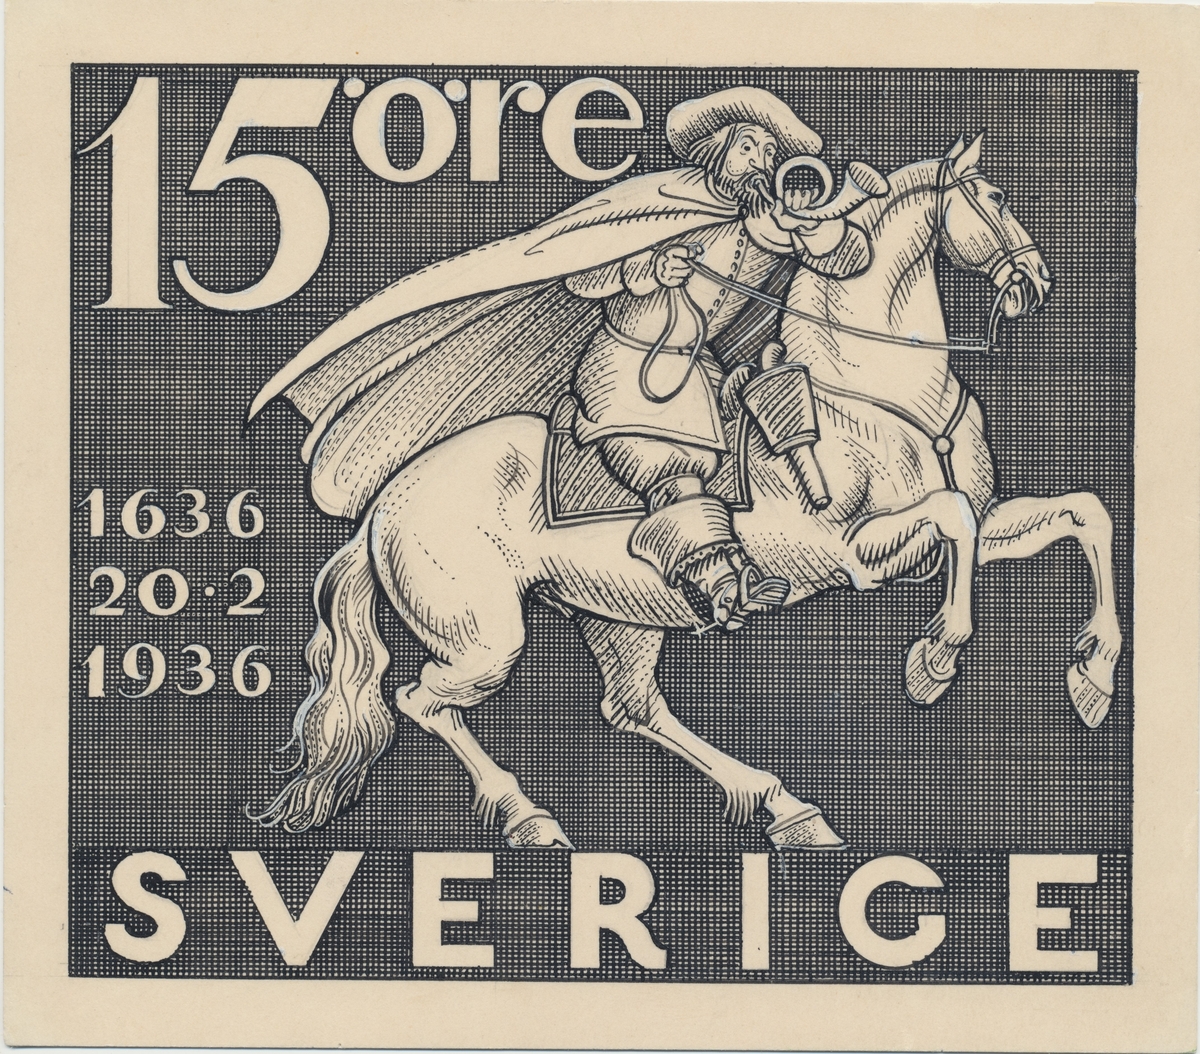 Förlagor från år 1936 som verkar som underlag till frimärket Postverket 300 år.